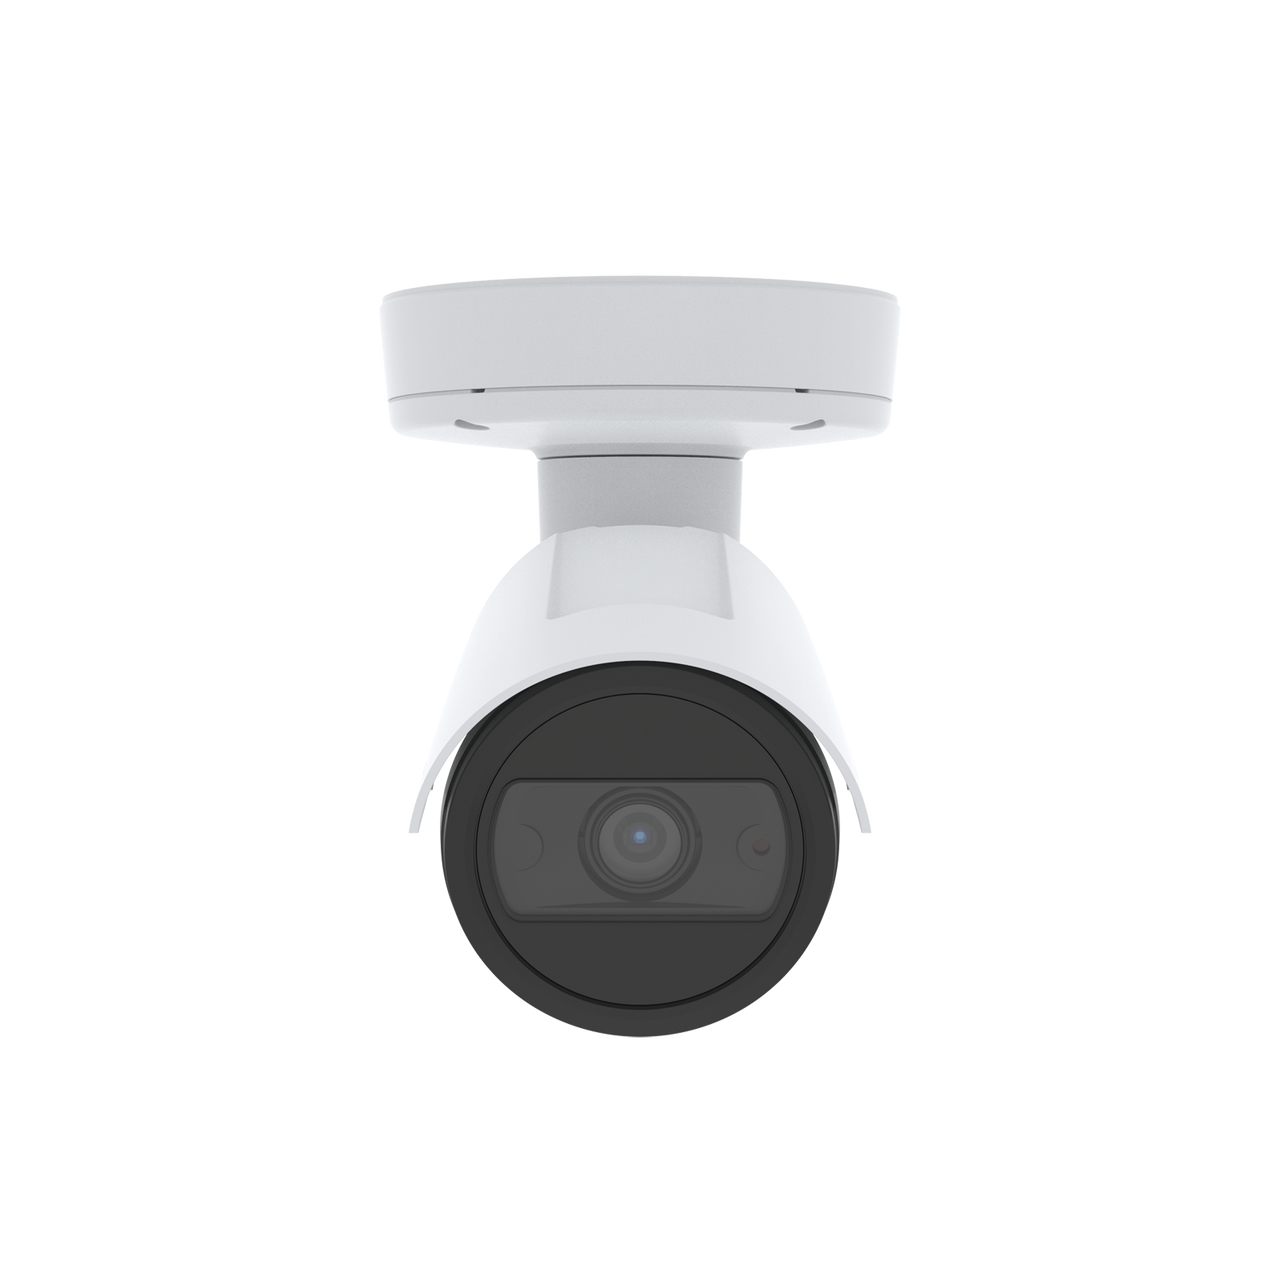 AXIS P1455-LE Versatile, feature-rich 2 MP surveillance